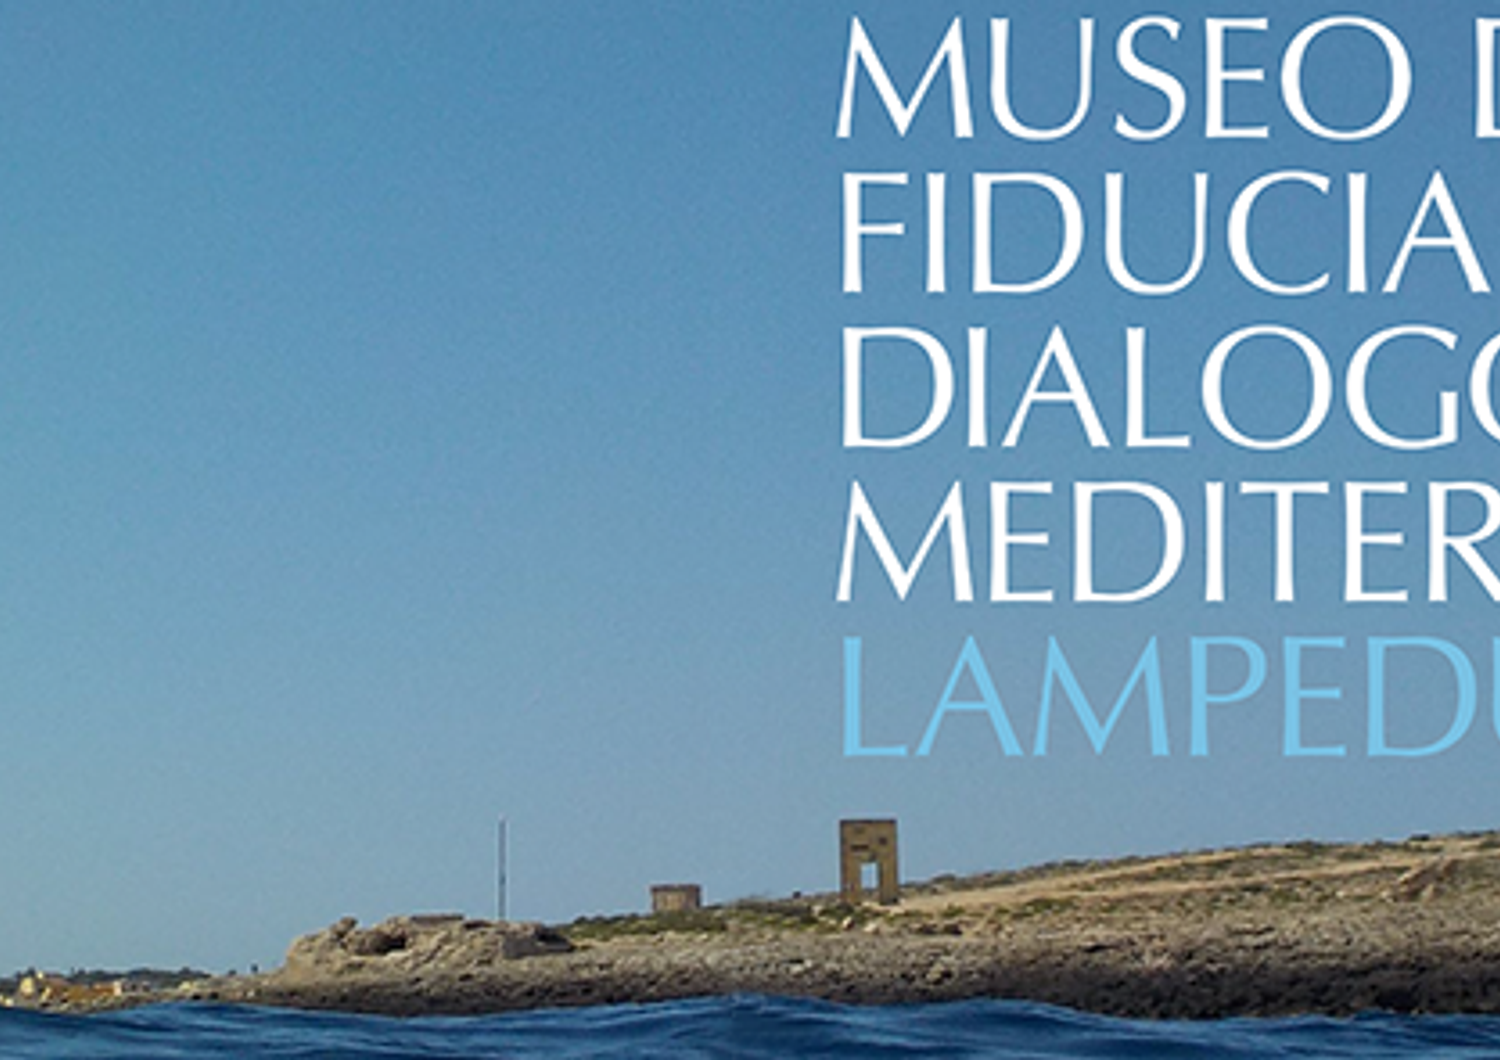 &nbsp;Lampedusa museo della fiducia e del dialogo per il mediterraneo